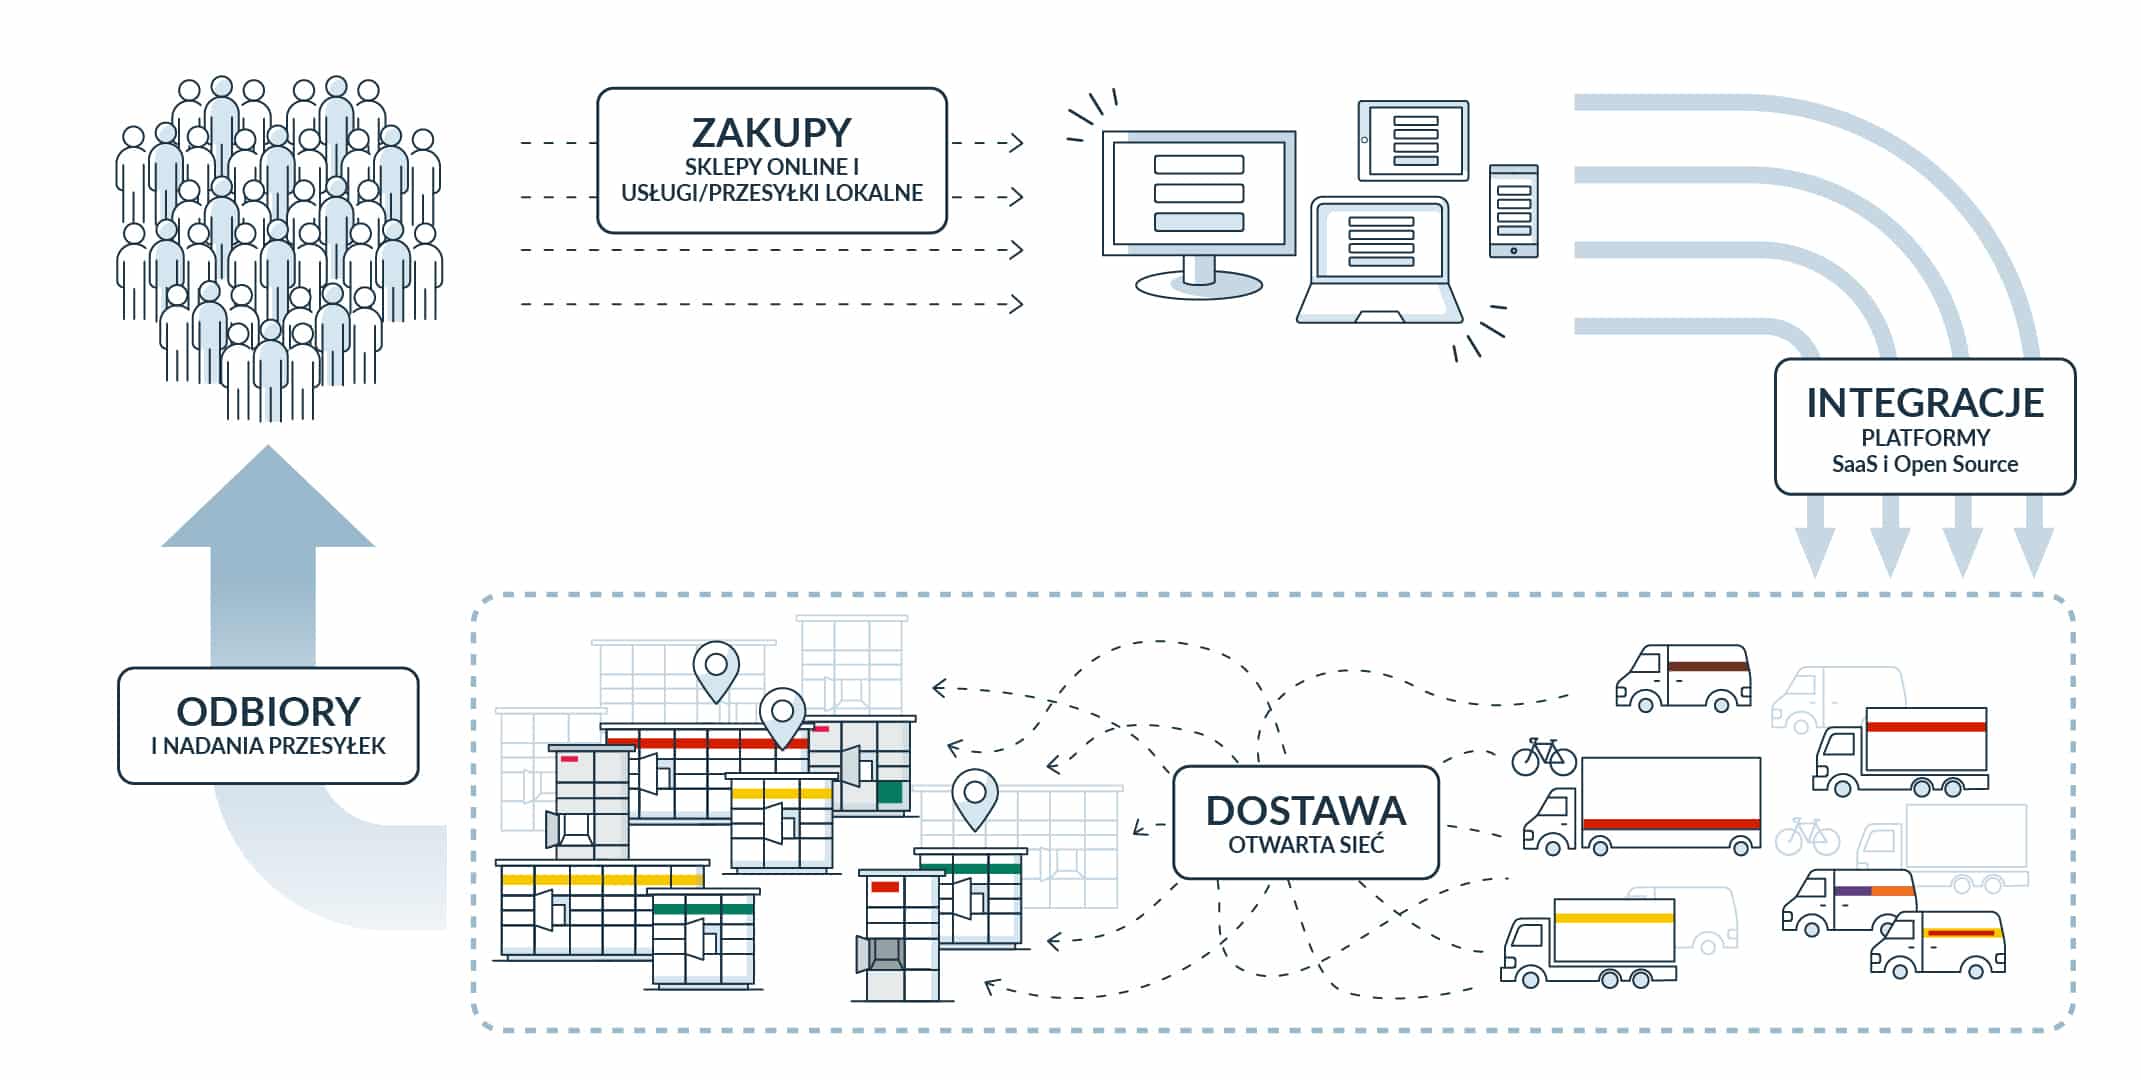 Jak ekonomia współdzielenia automatów paczkowych może zmienić przyszłość logistyki w Polsce